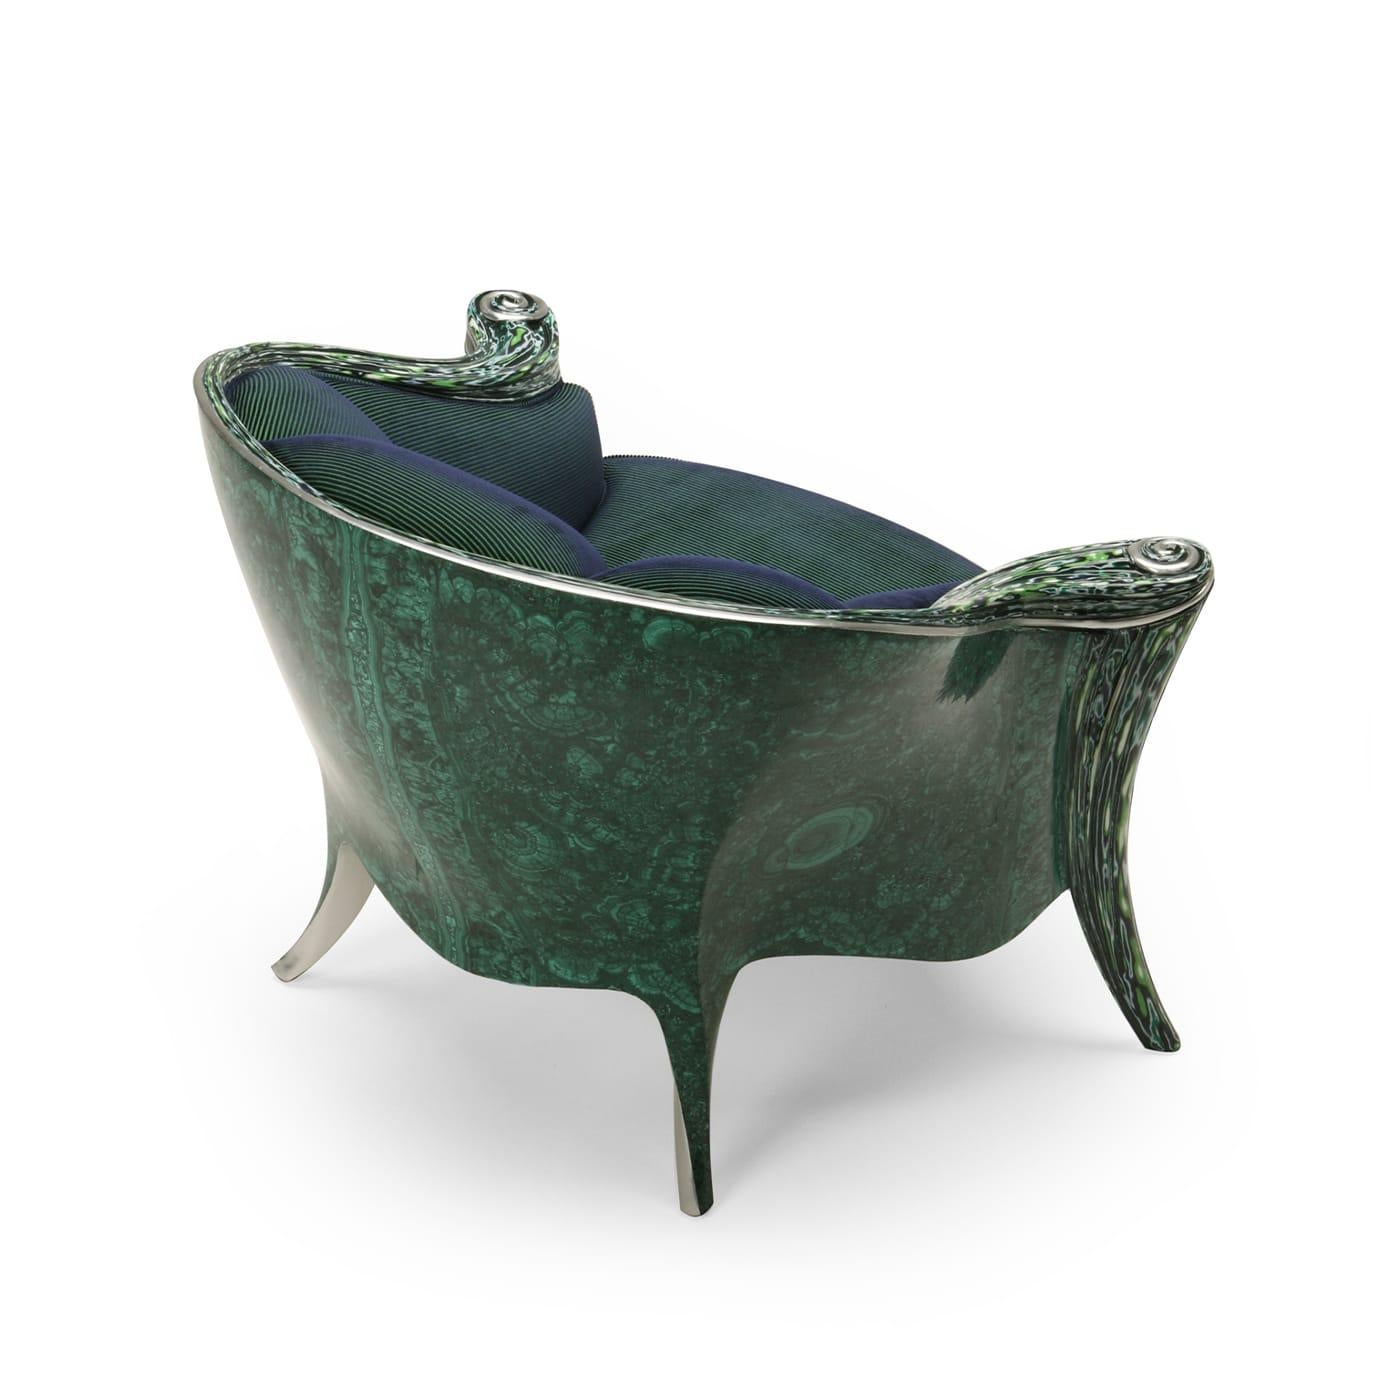 Dieser von Carlo Rampazzi entworfene Sessel ist ein Musterbeispiel an Exzentrik und Eleganz. Fließende Profile kennzeichnen die umhüllende Holzstruktur, deren vordere Beine fein modelliert und mit einer polychromen, glasartigen Oberfläche namens